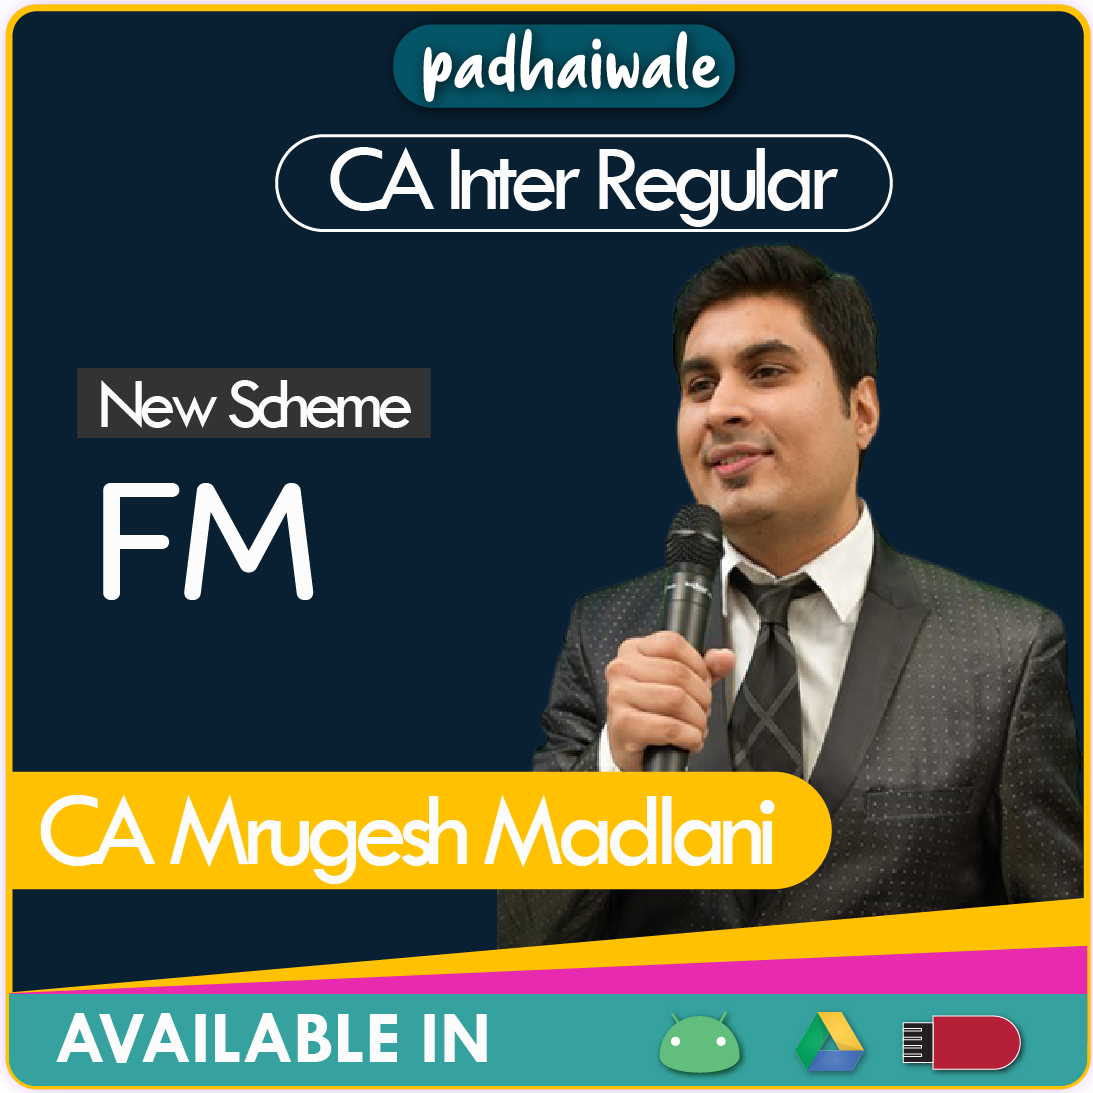 CA Inter FM New Scheme Mrugesh Madlani